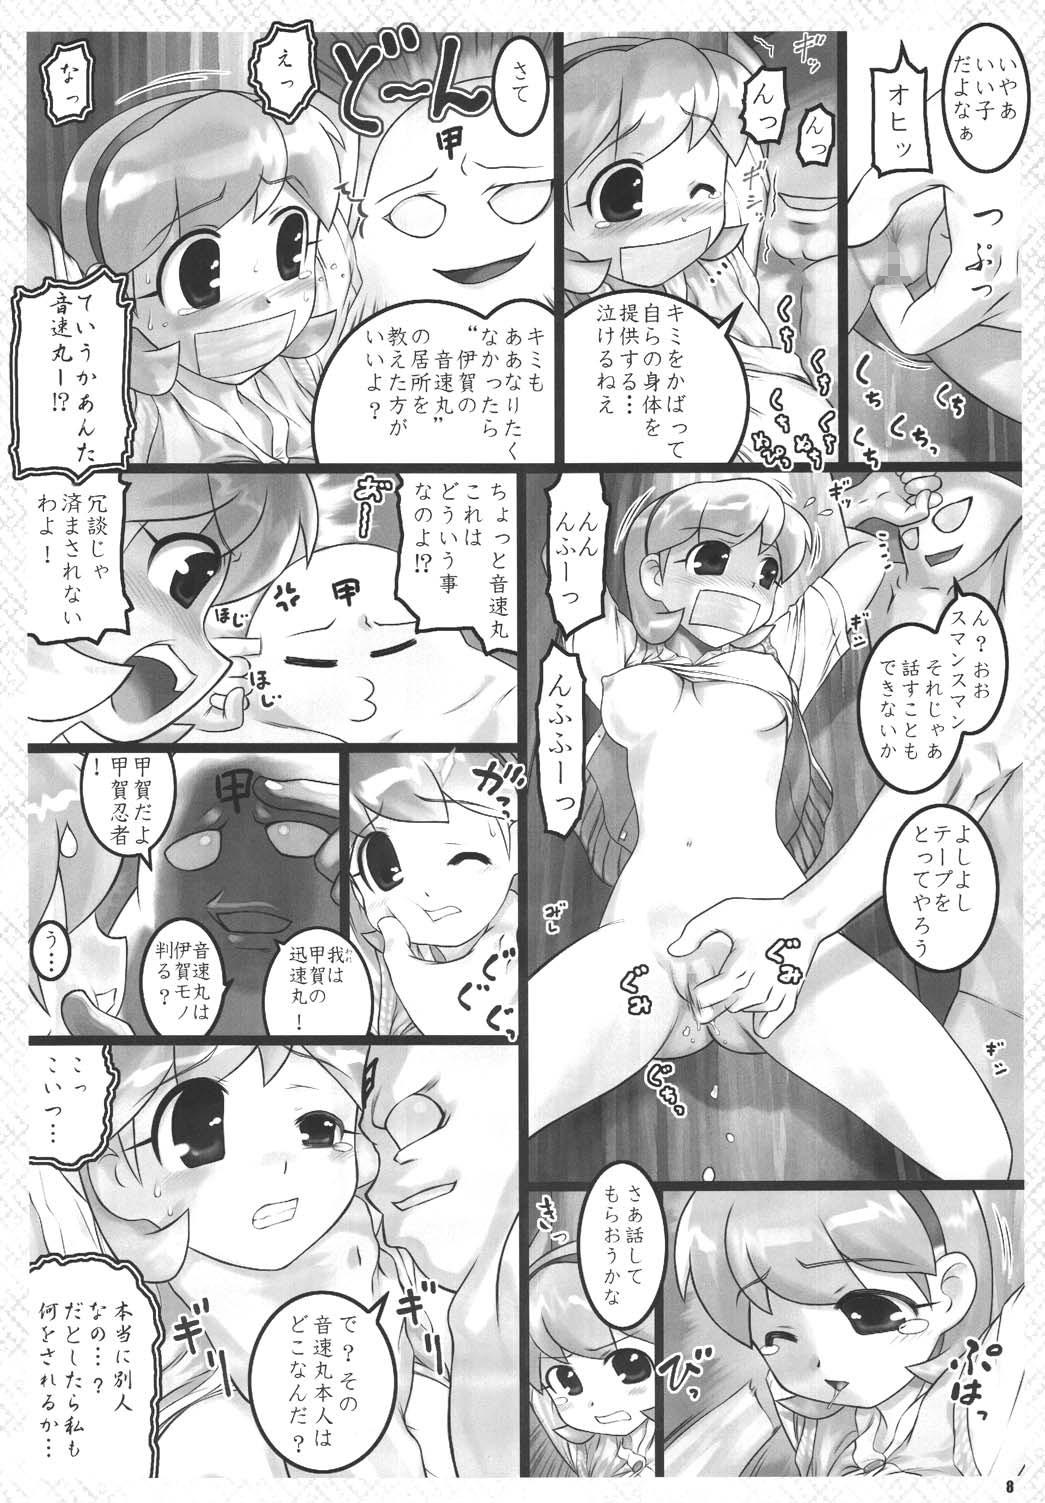 Dominatrix Kunoichi Ninpouchou - 2x2 shinobuden Shemale - Page 8